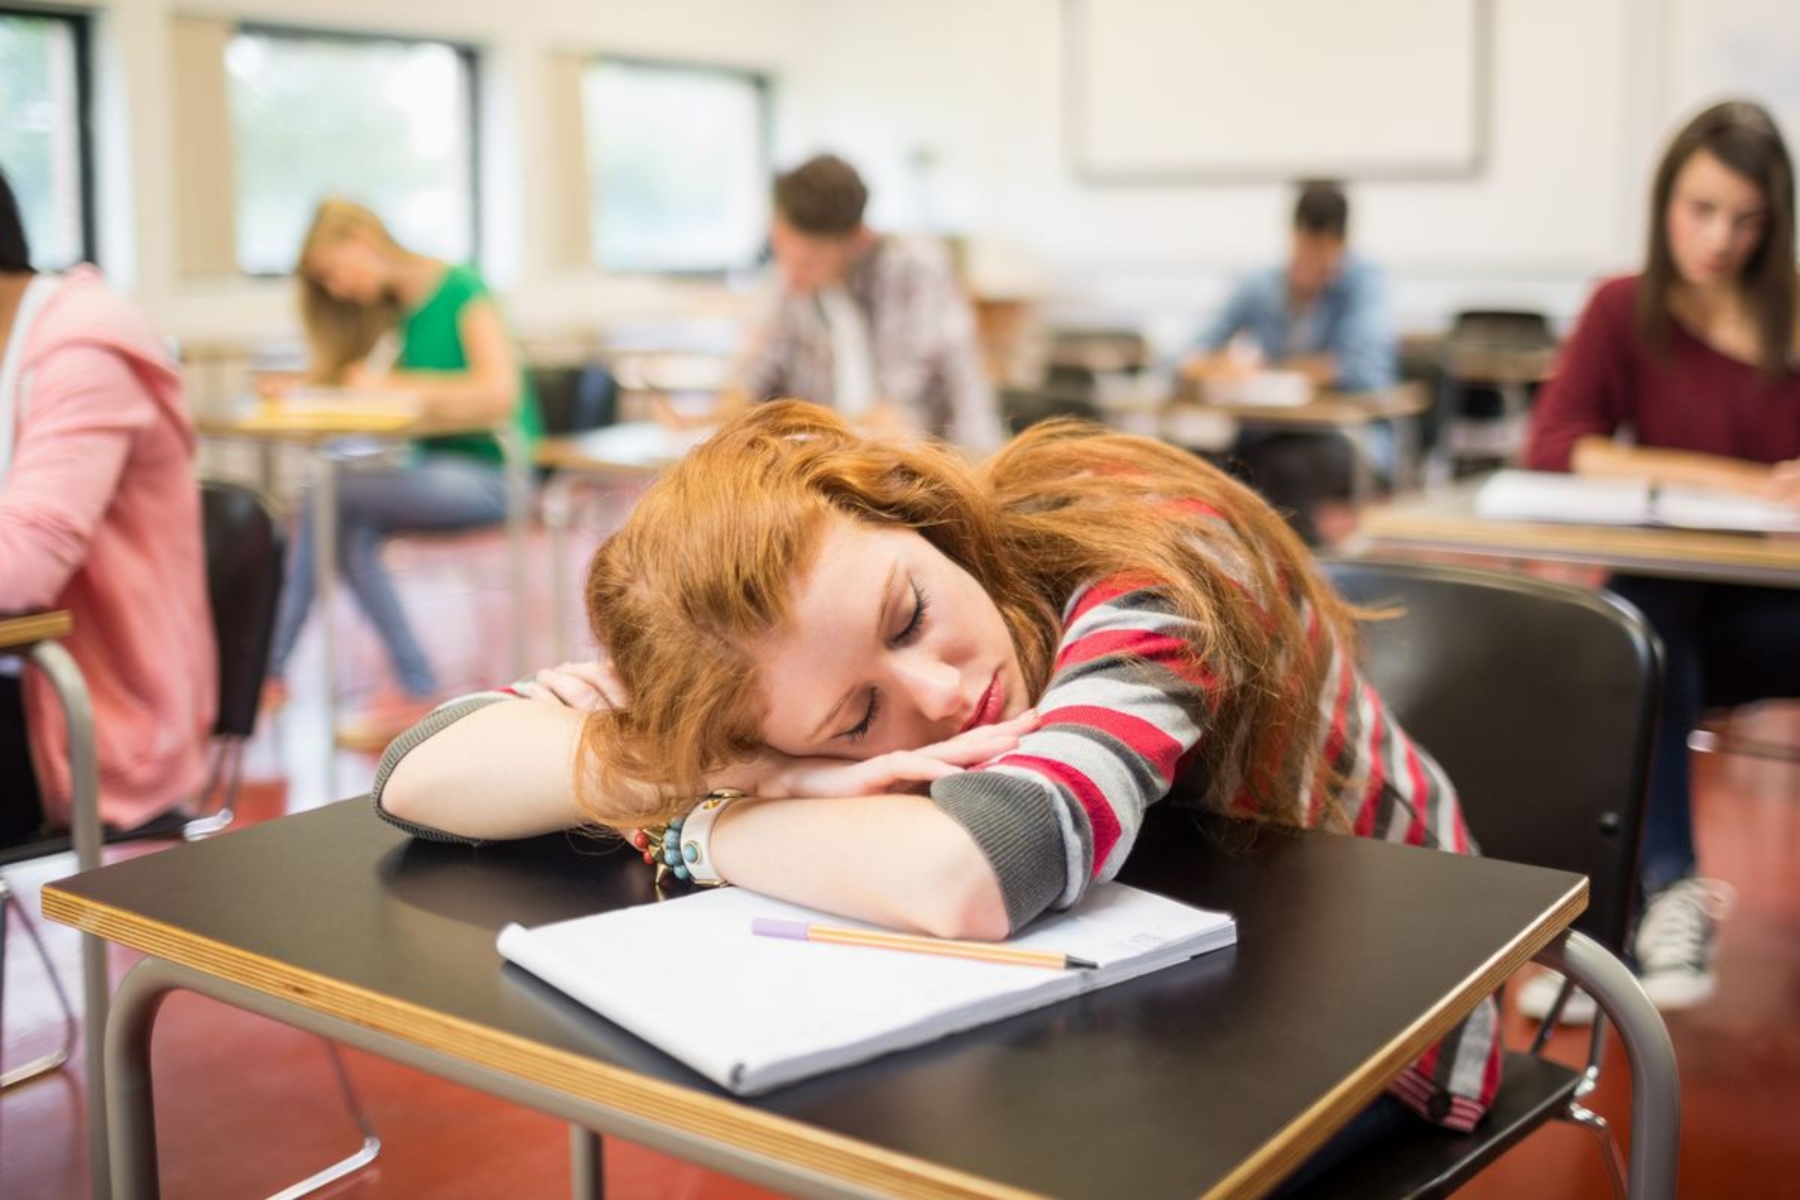 Τηλεκπαίδευση ύπνος: Οι μαθητές είχαν καλύτερη ποιότητα ύπνου στο lockdown